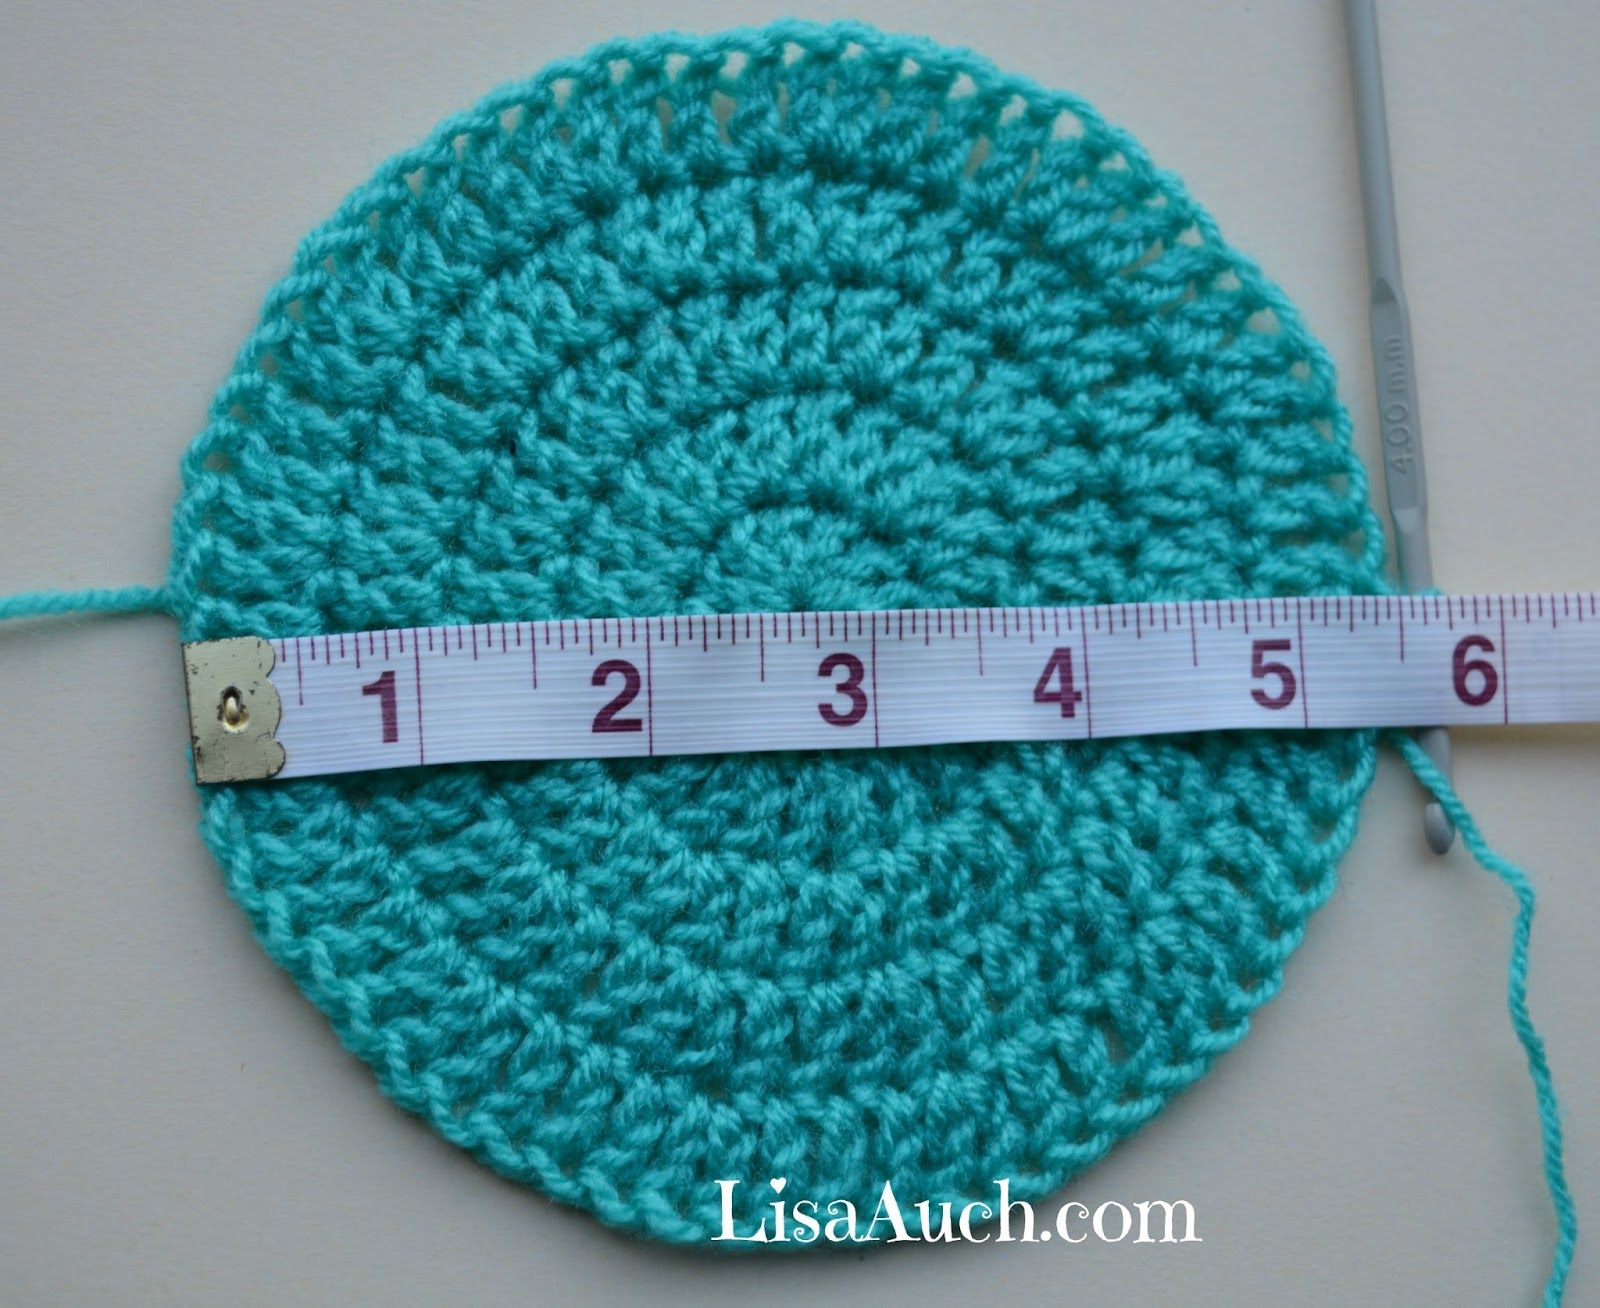 Crochet Baby Hat Pattern Free Crochet Ba Beanie Hat Pattern 6 12 Months Crochet Project